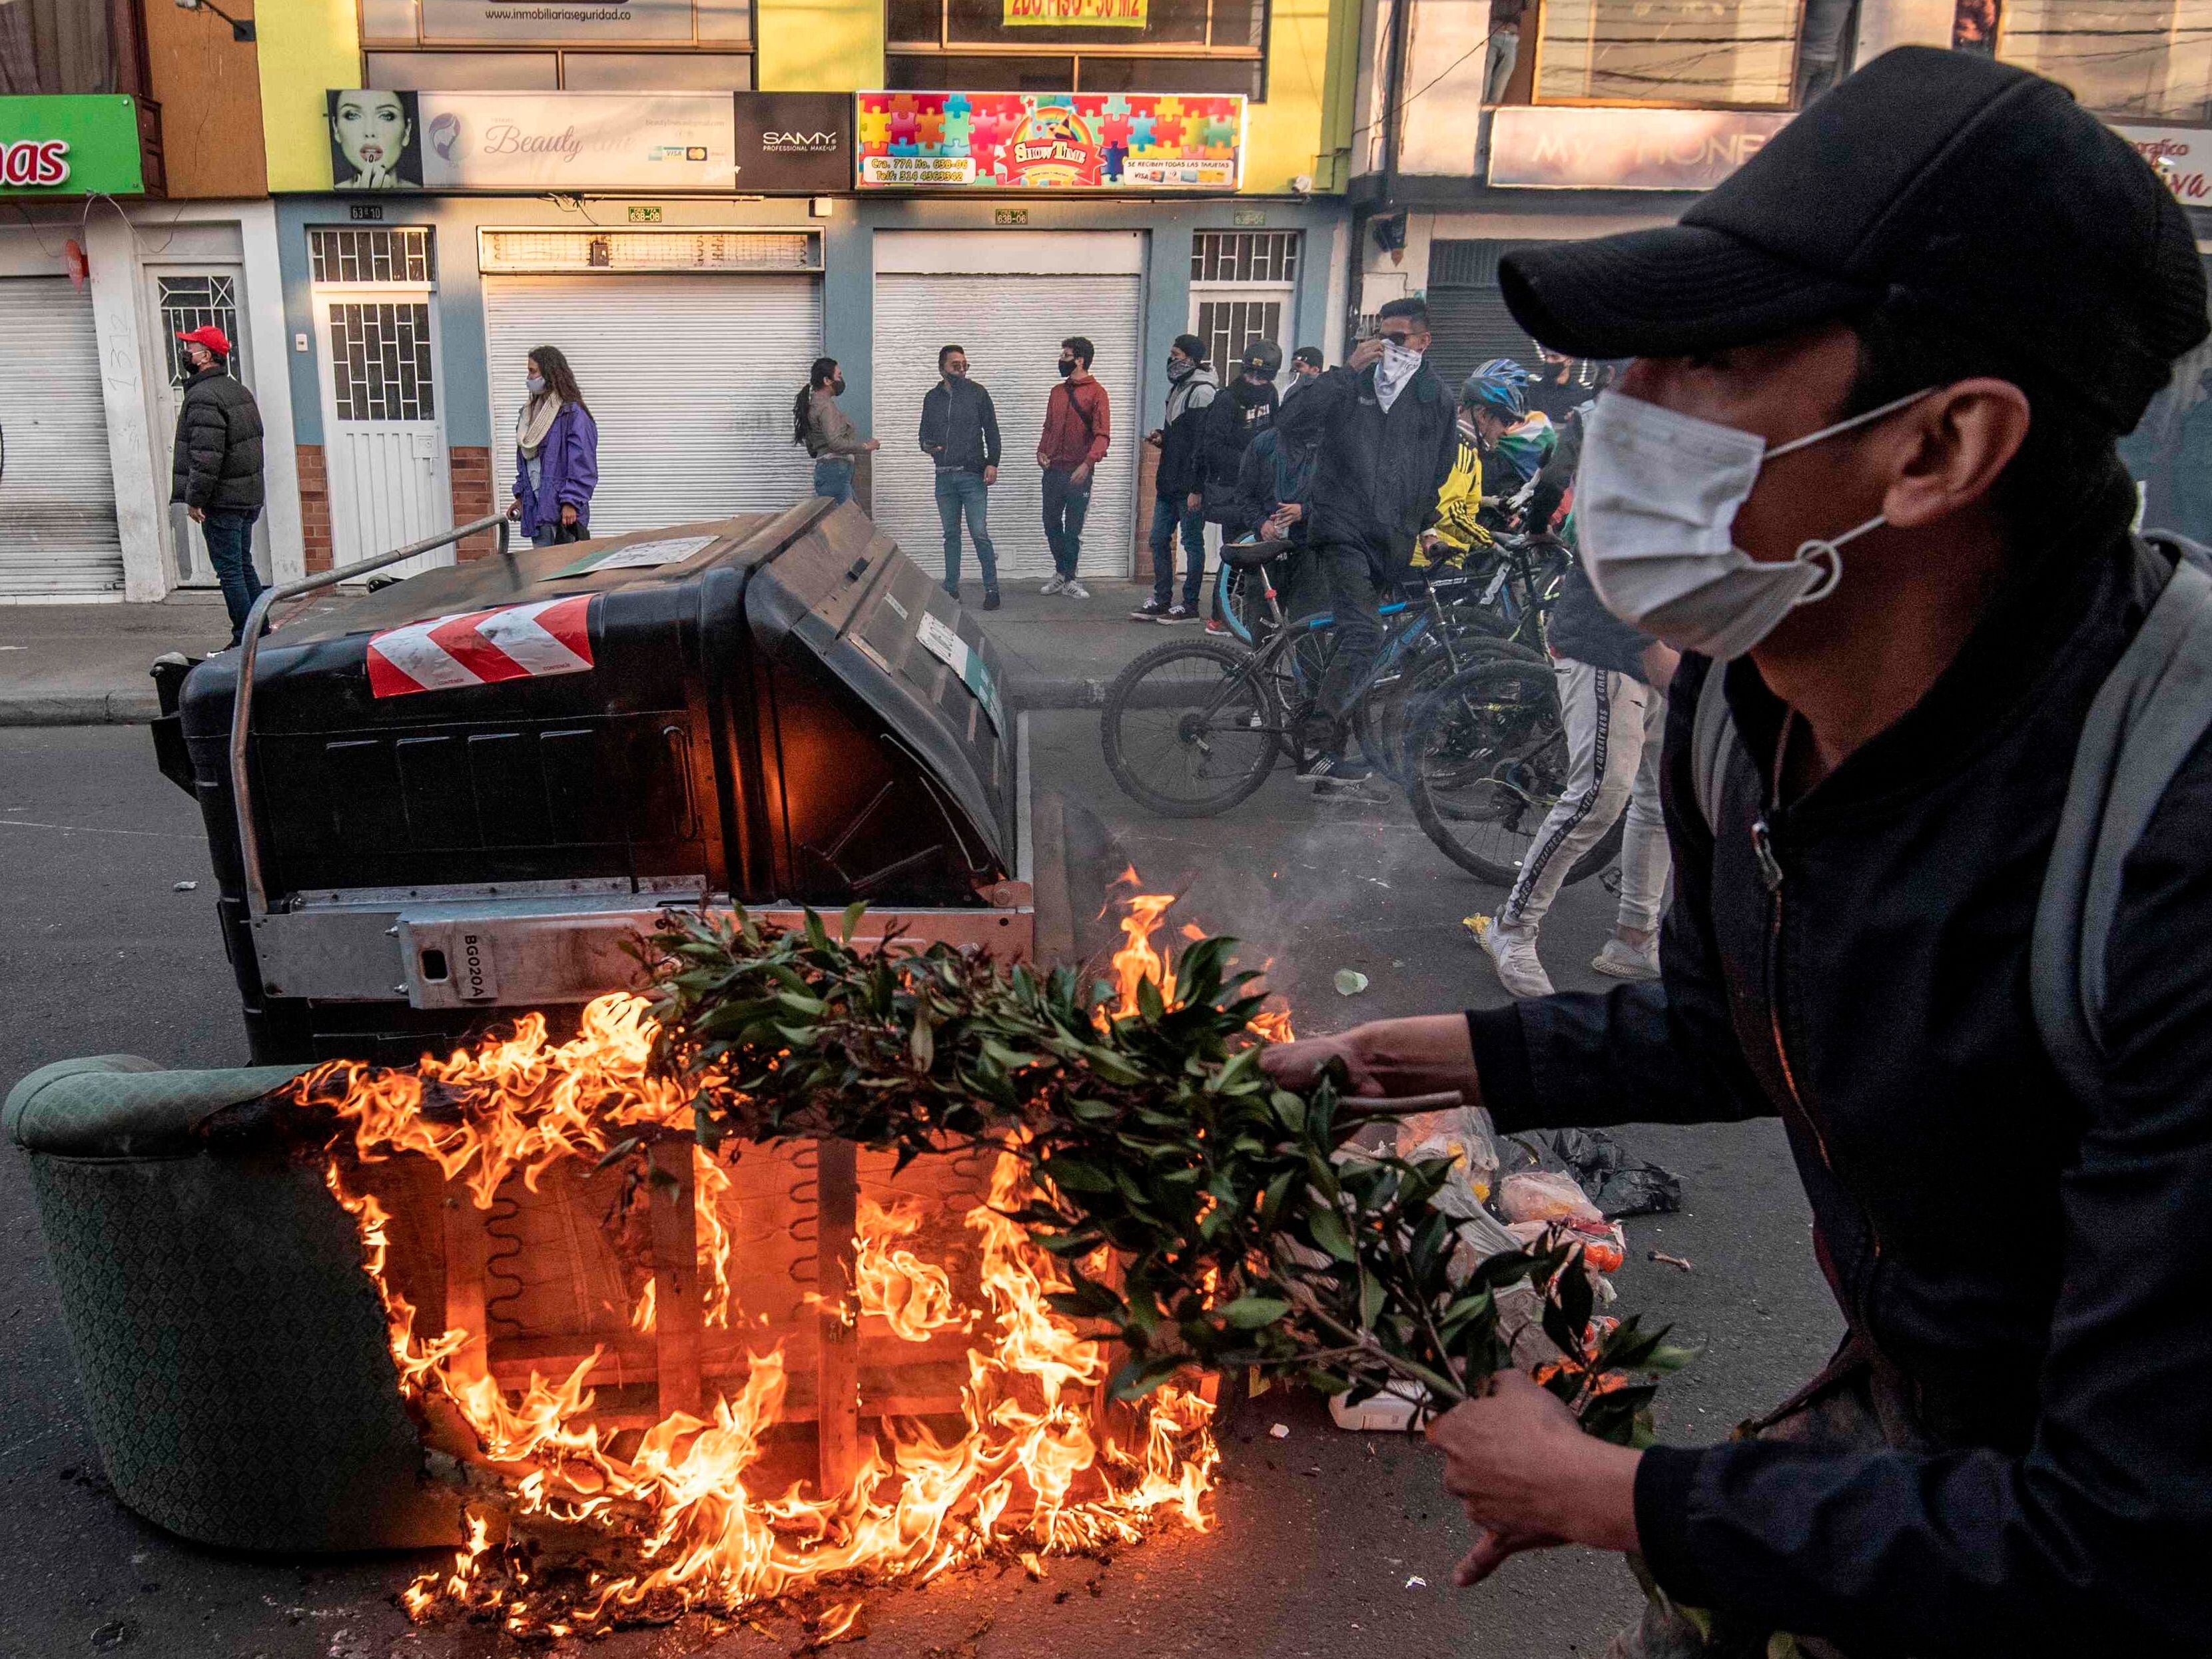 Manifestante ateia fogo em barricadas durante os confrontos com a polícia em Bogotá, após a morte de advogado pelas forças de segurança.